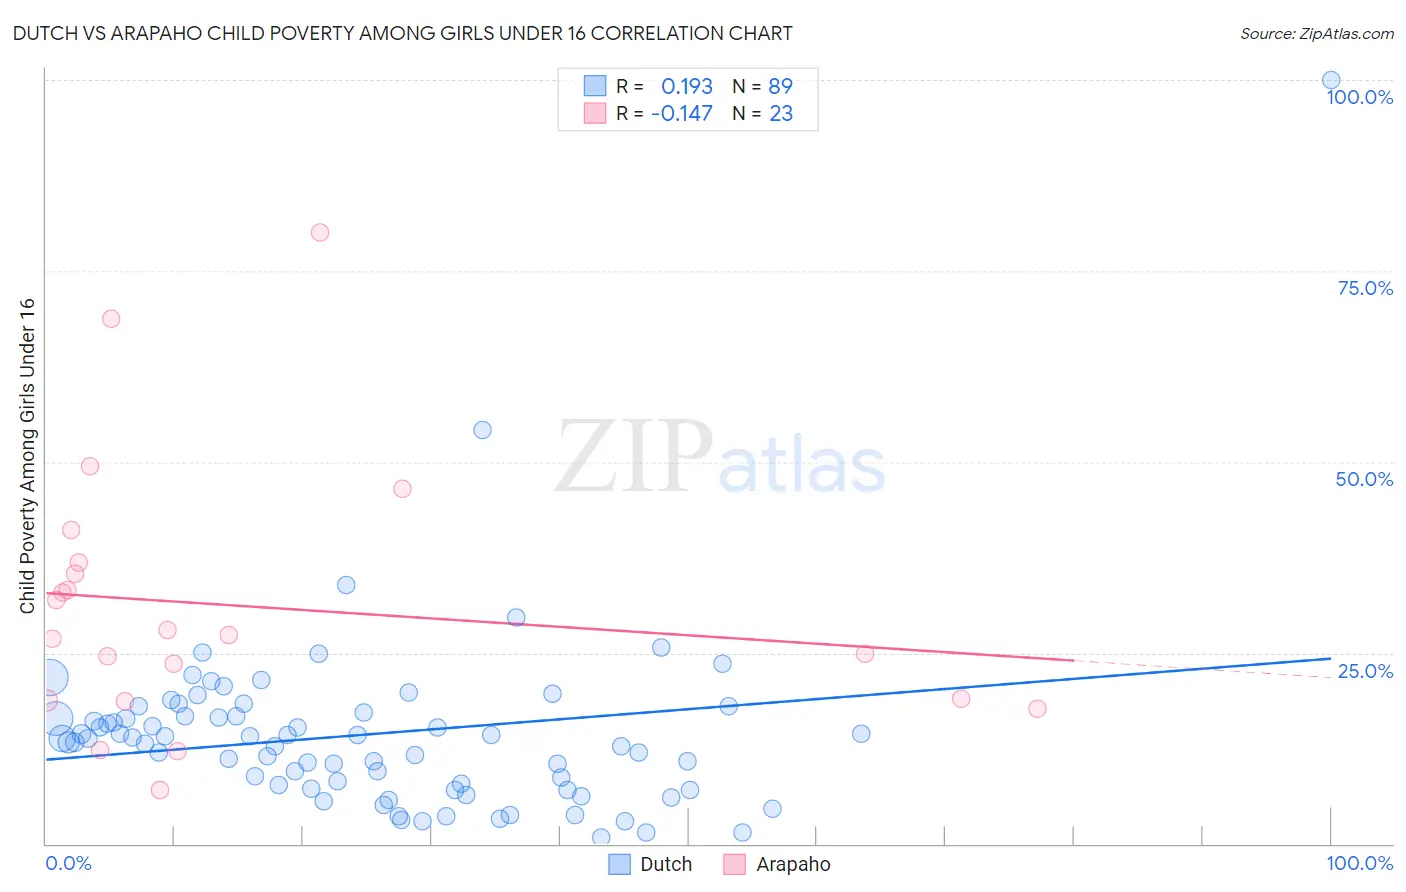 Dutch vs Arapaho Child Poverty Among Girls Under 16